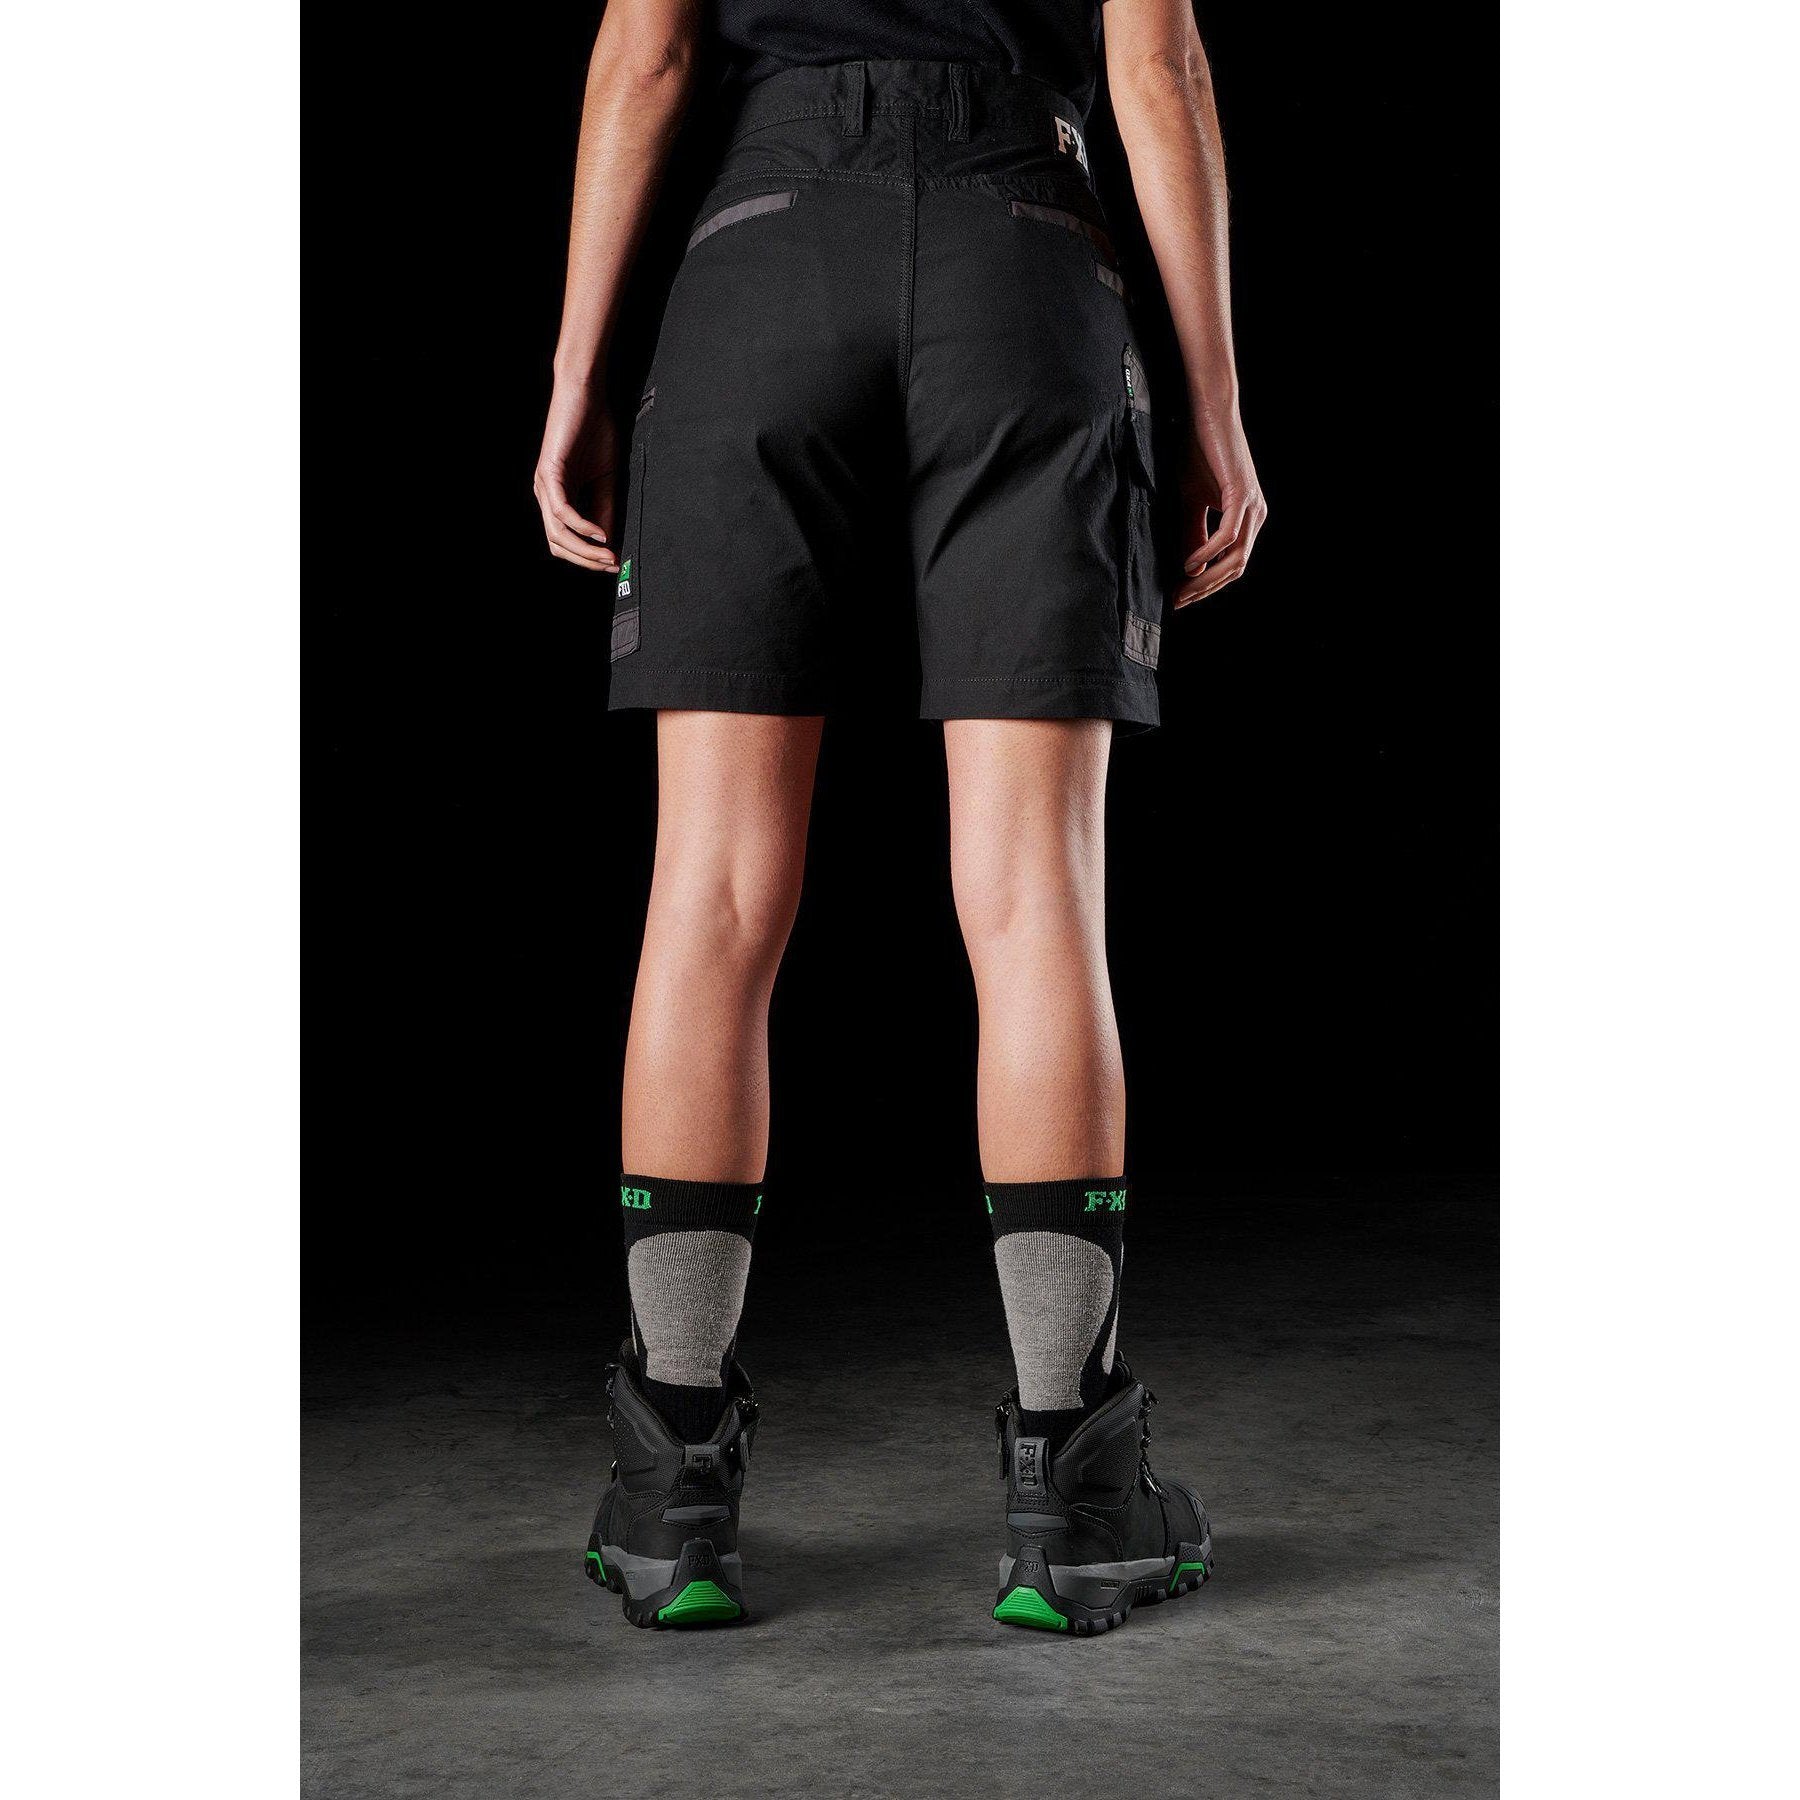 FXD WS-3W Women's Stretch Work Shorts (FX11906203). Khaki. Size 18